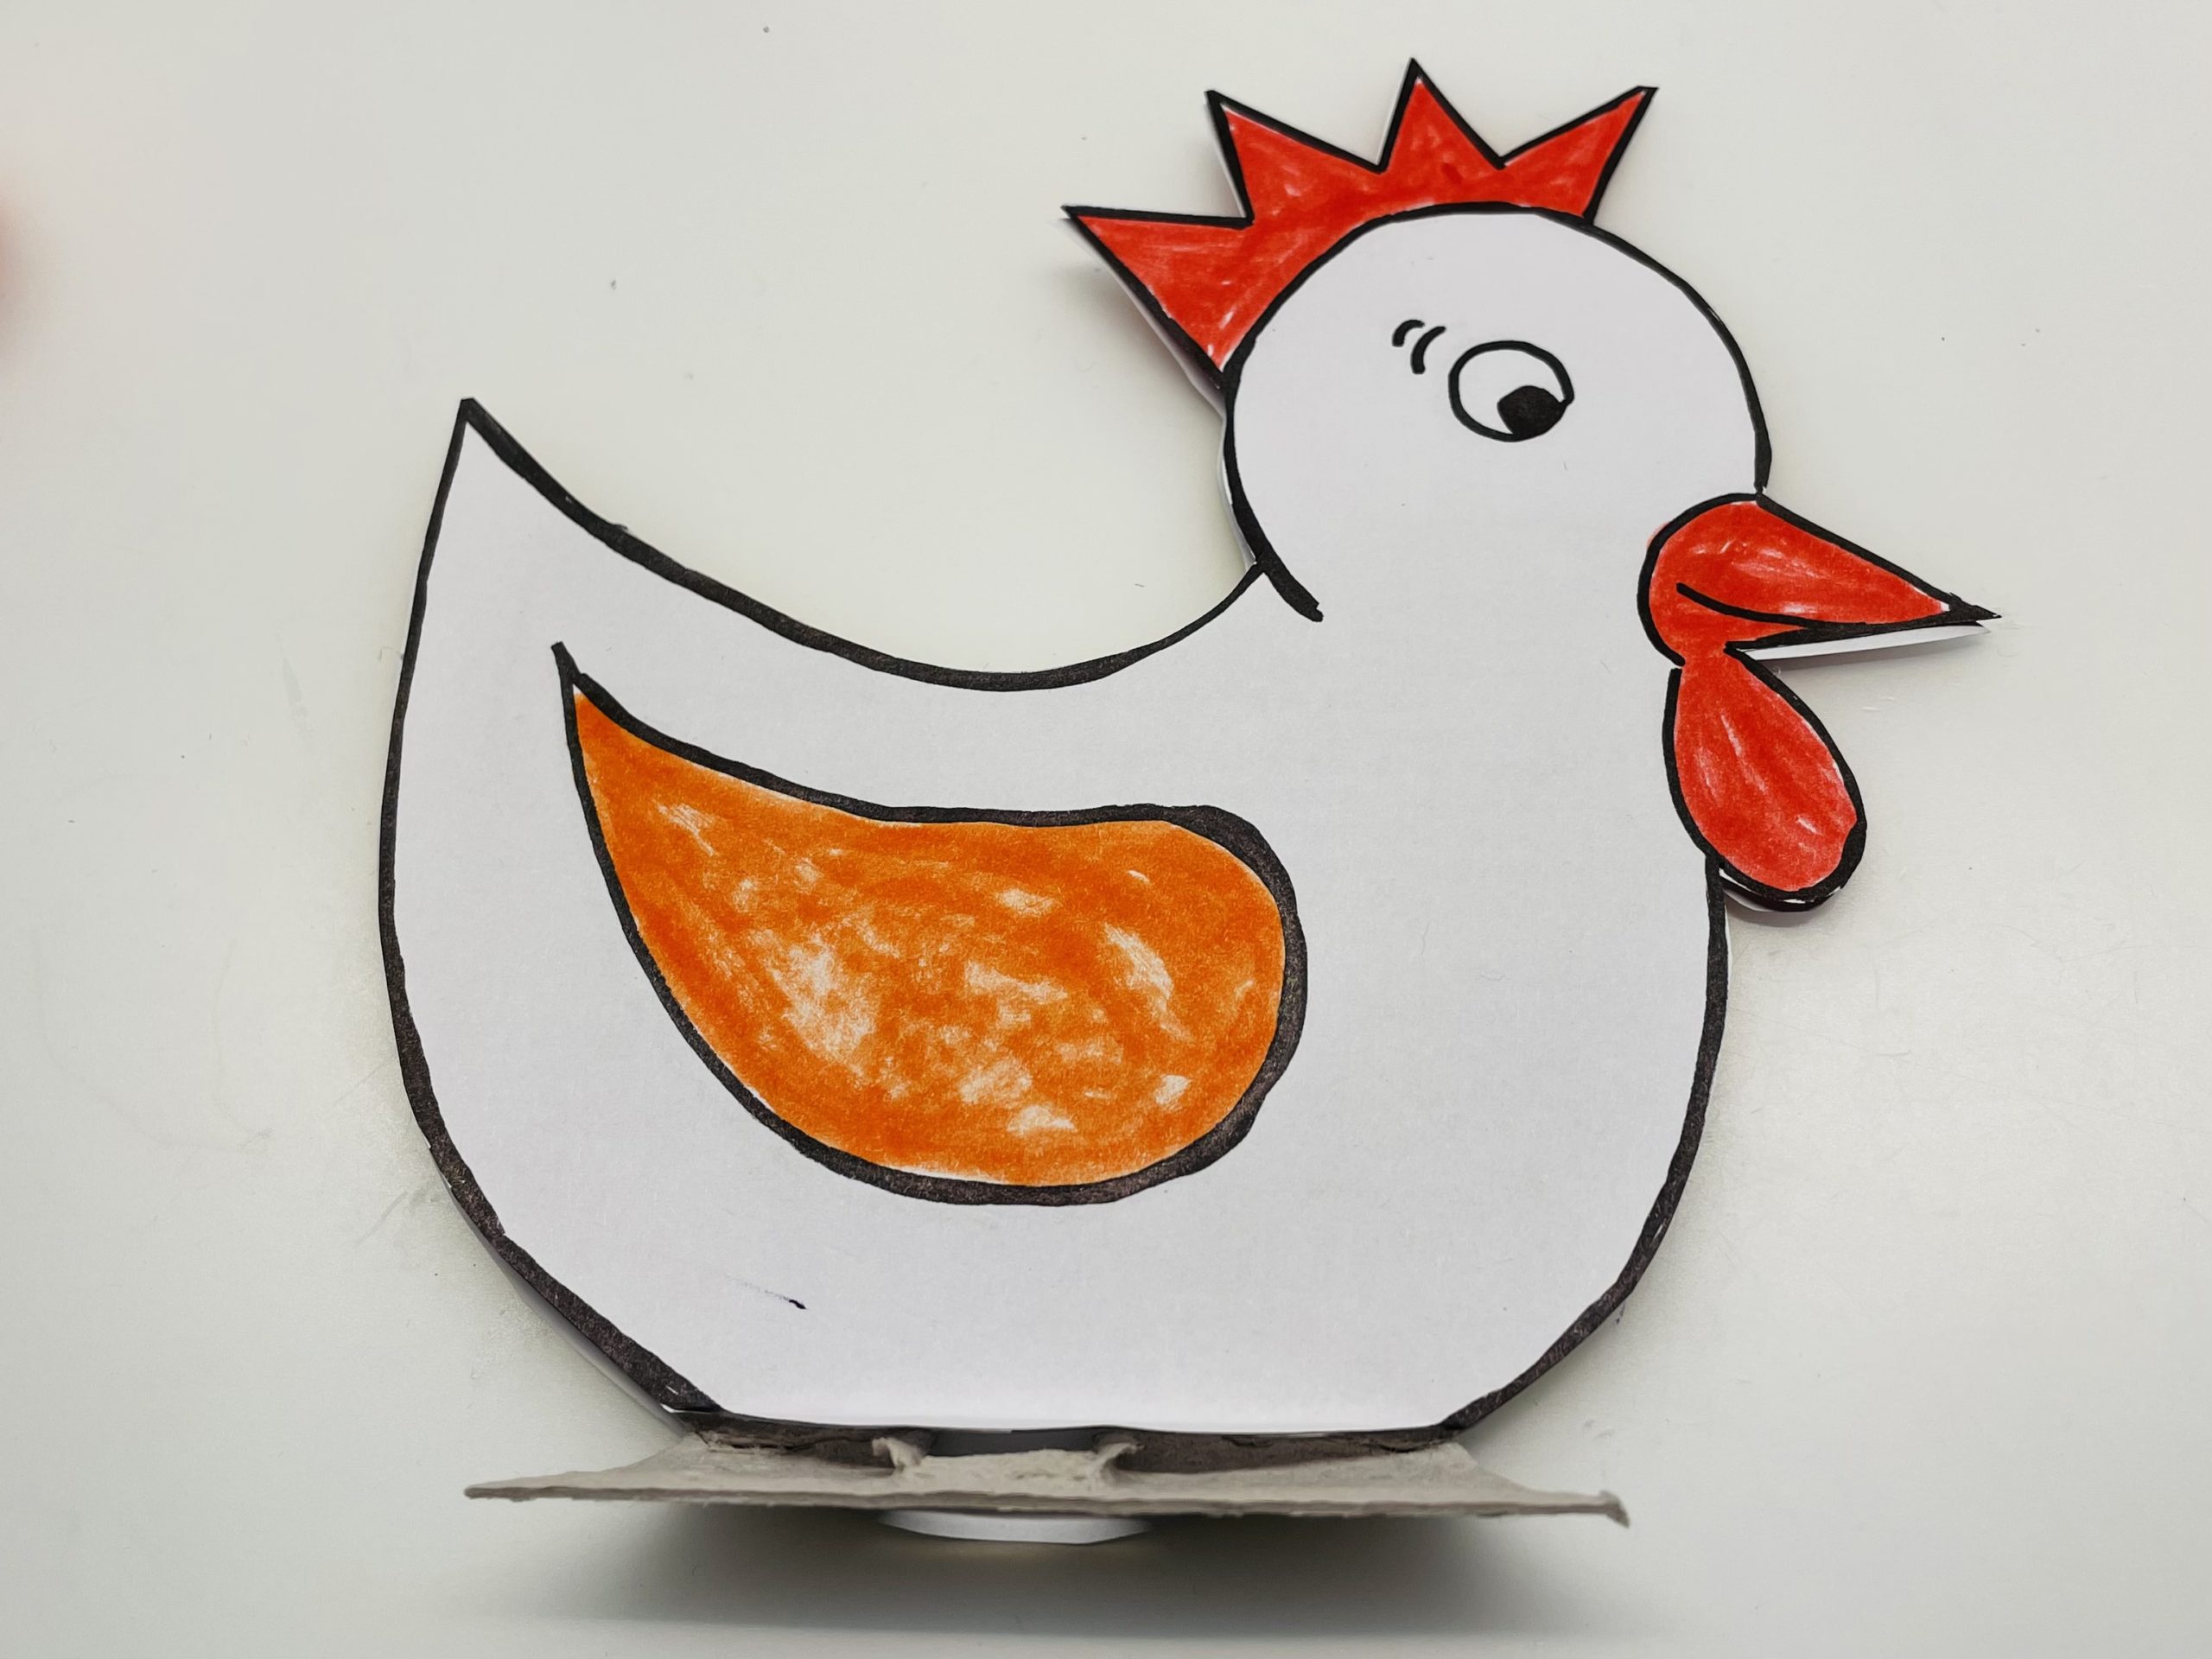 3. Bild zum Schritt 25 für die Kinder-Beschäftigung: 'Jetzt malt ihr das Huhn mit Filzstiften oder Buntstiften aus.'